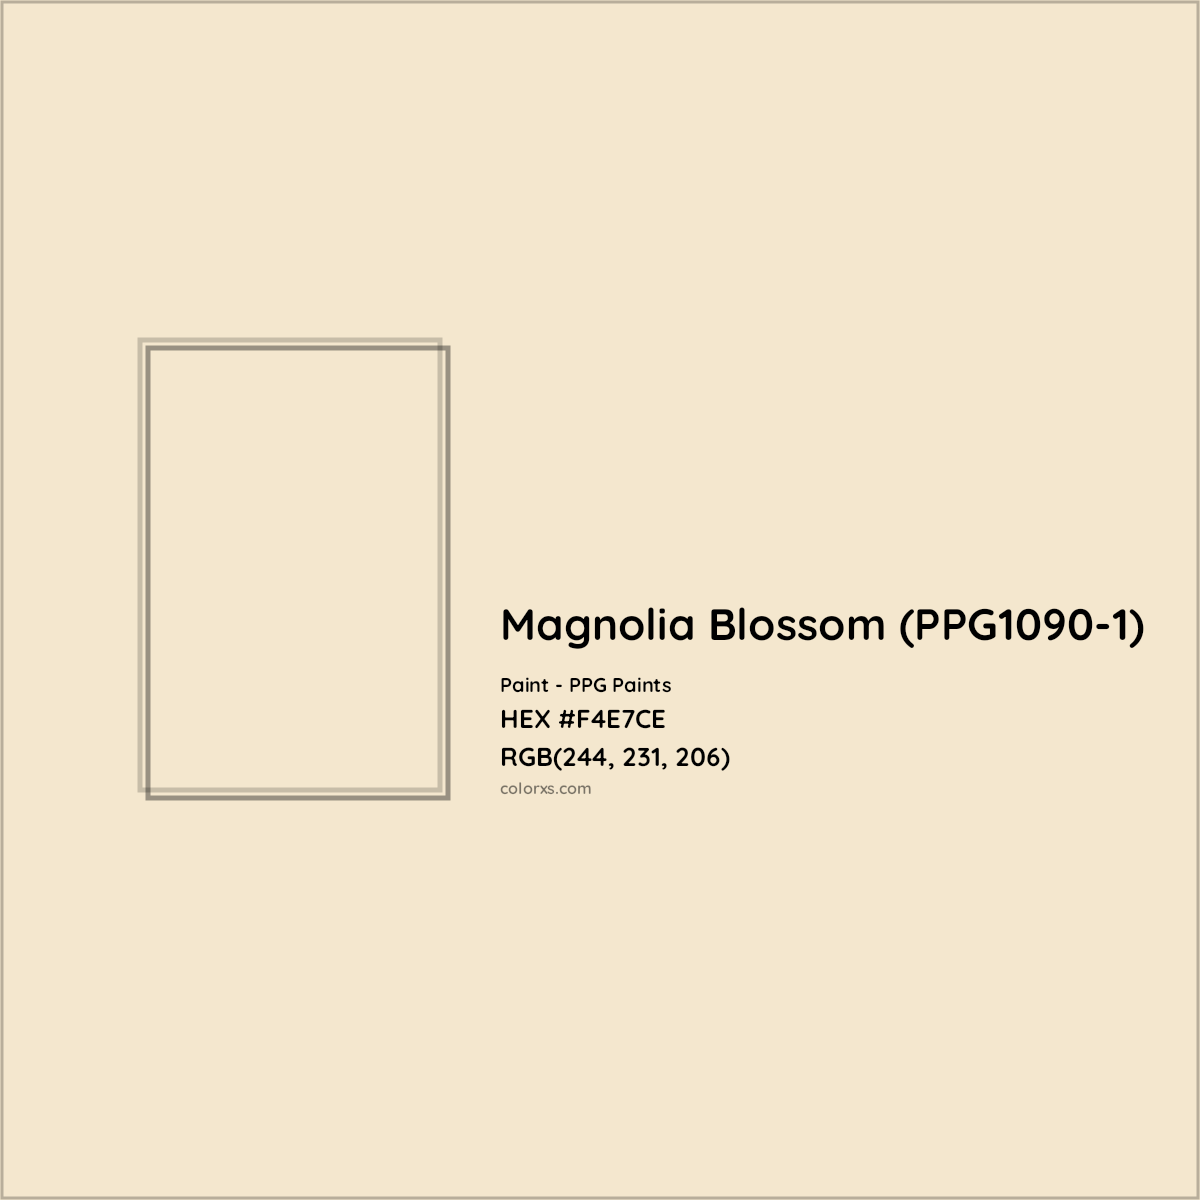 HEX #F4E7CE Magnolia Blossom (PPG1090-1) Paint PPG Paints - Color Code